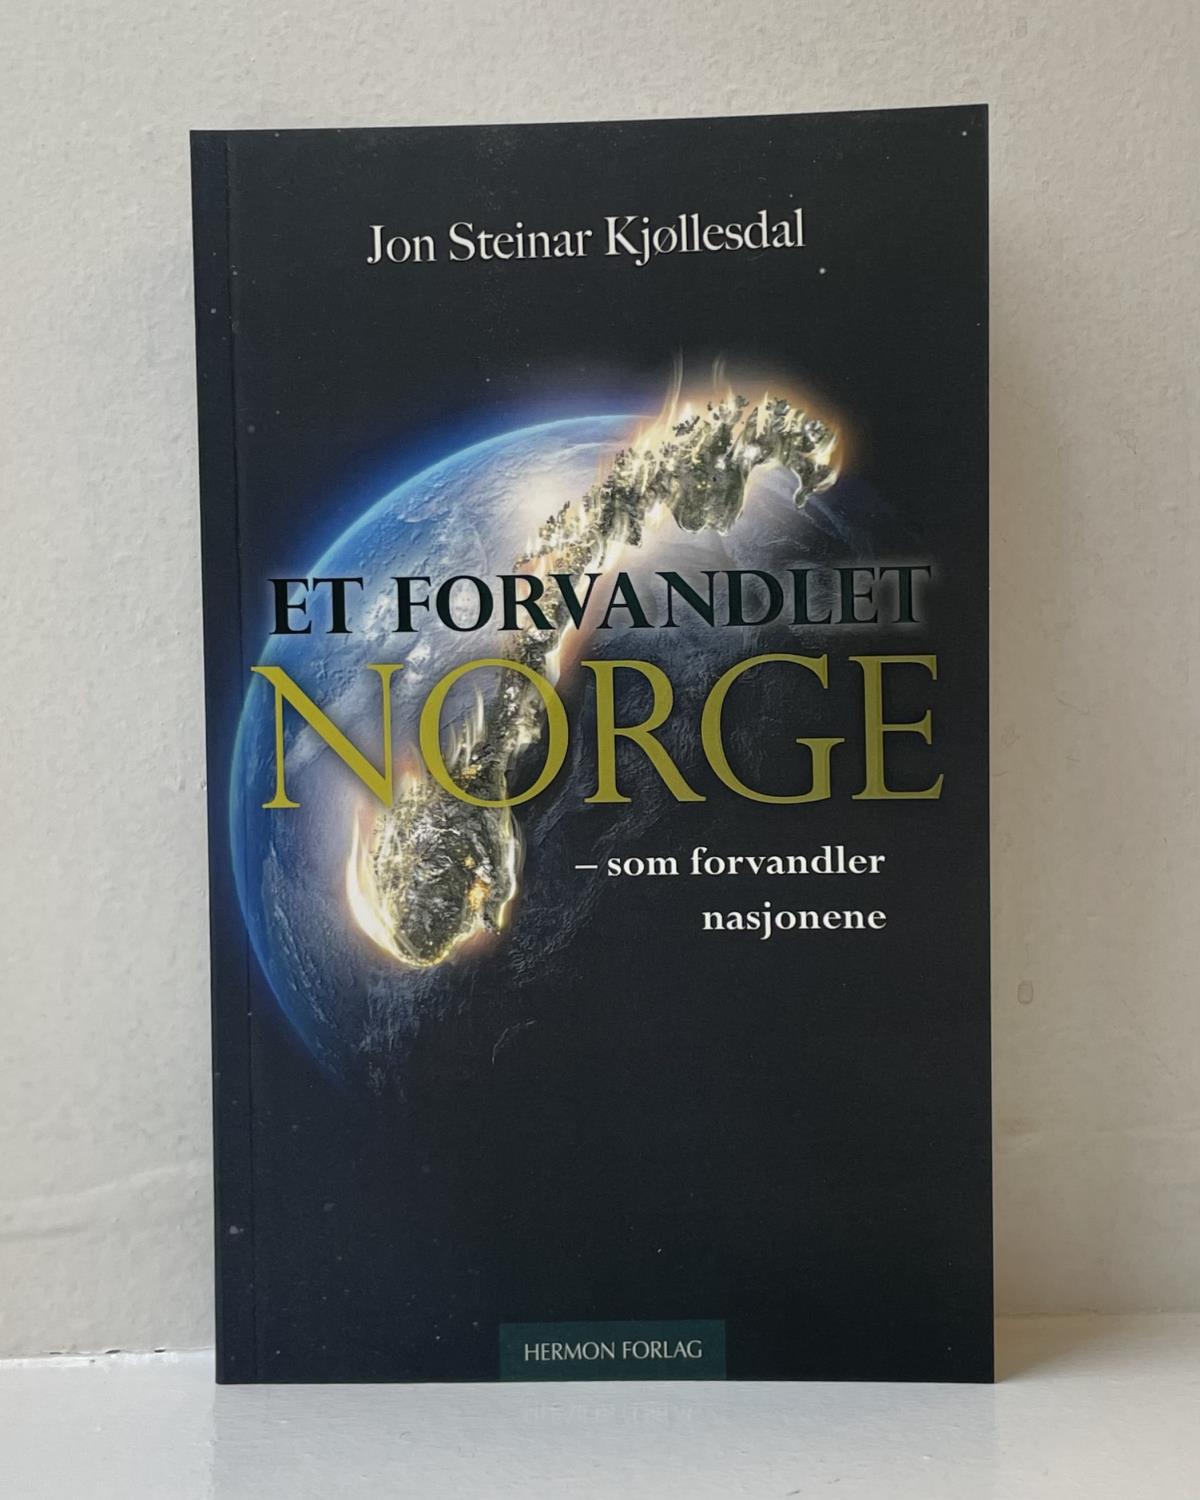 Et forvandlet Norge - som forvandler nasjonene